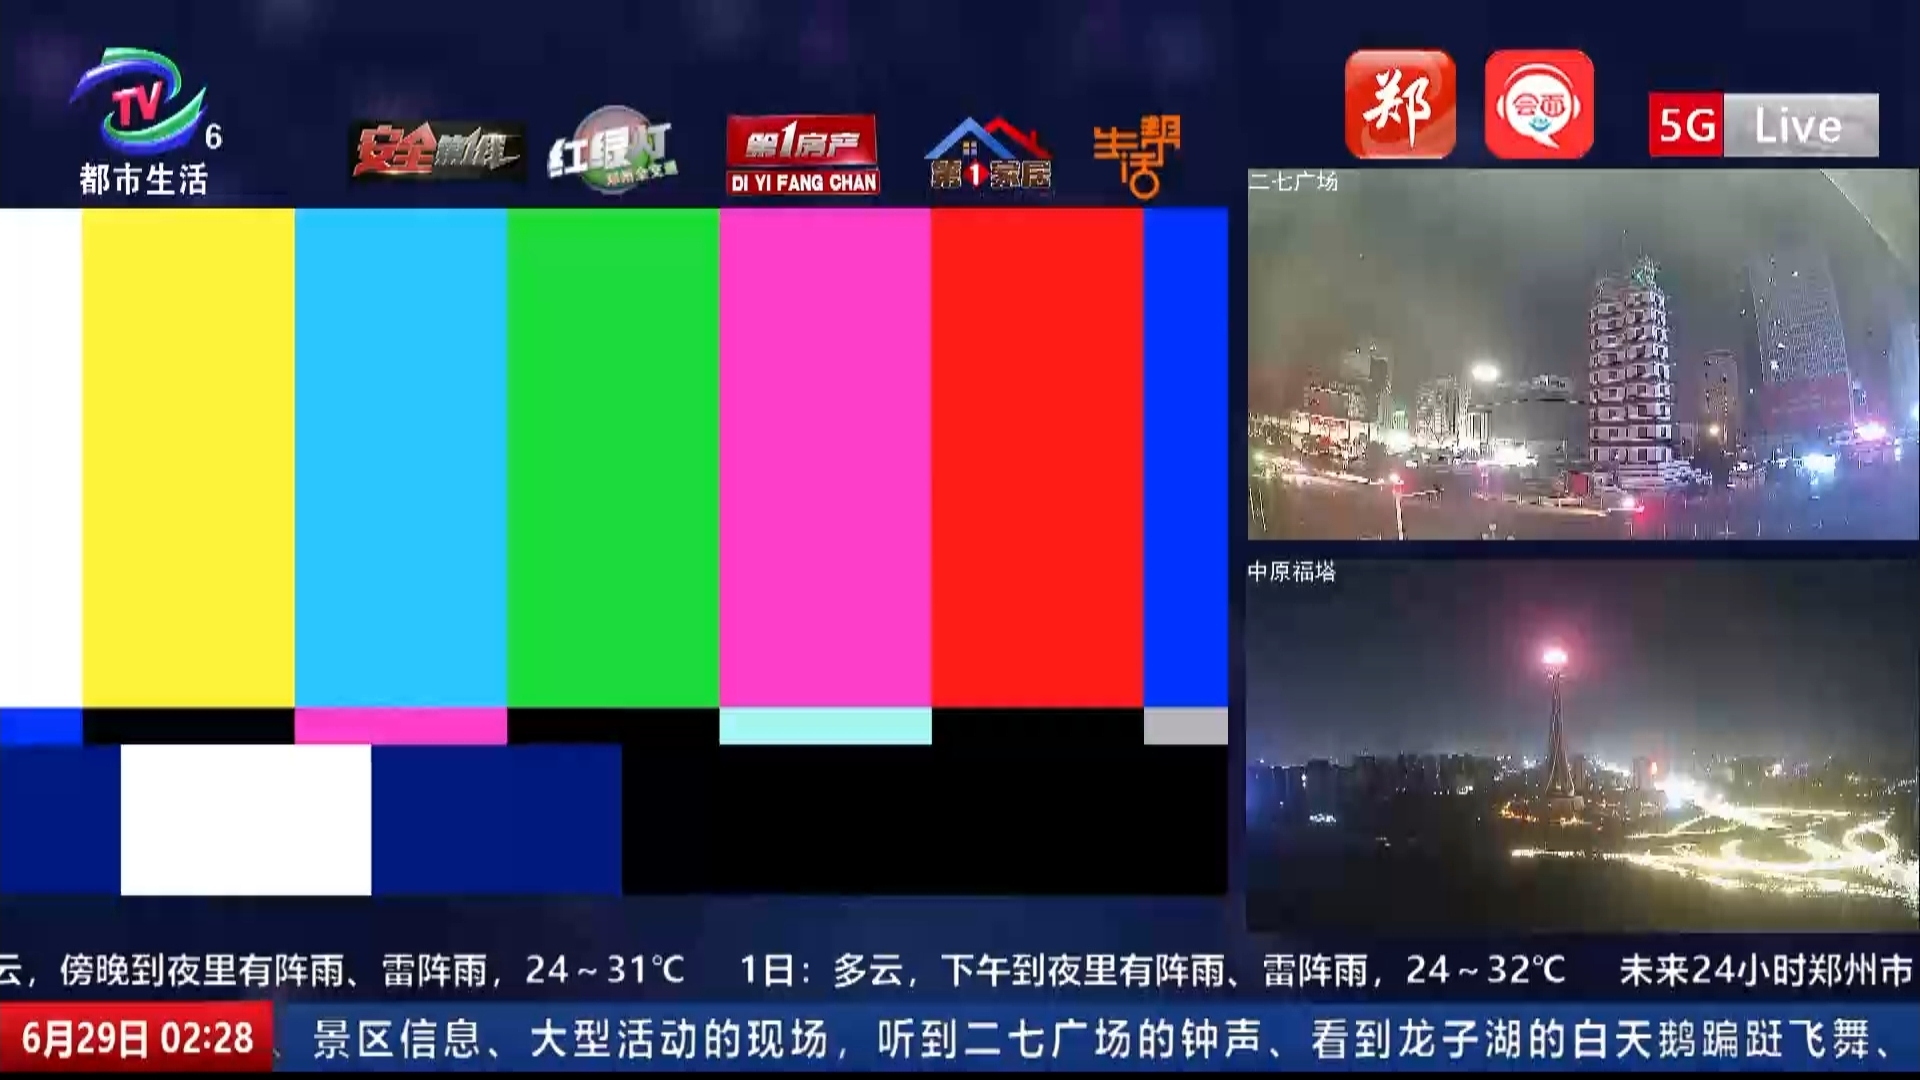 郑州广播电视台5G Live城市直播频道（都市生活频道）